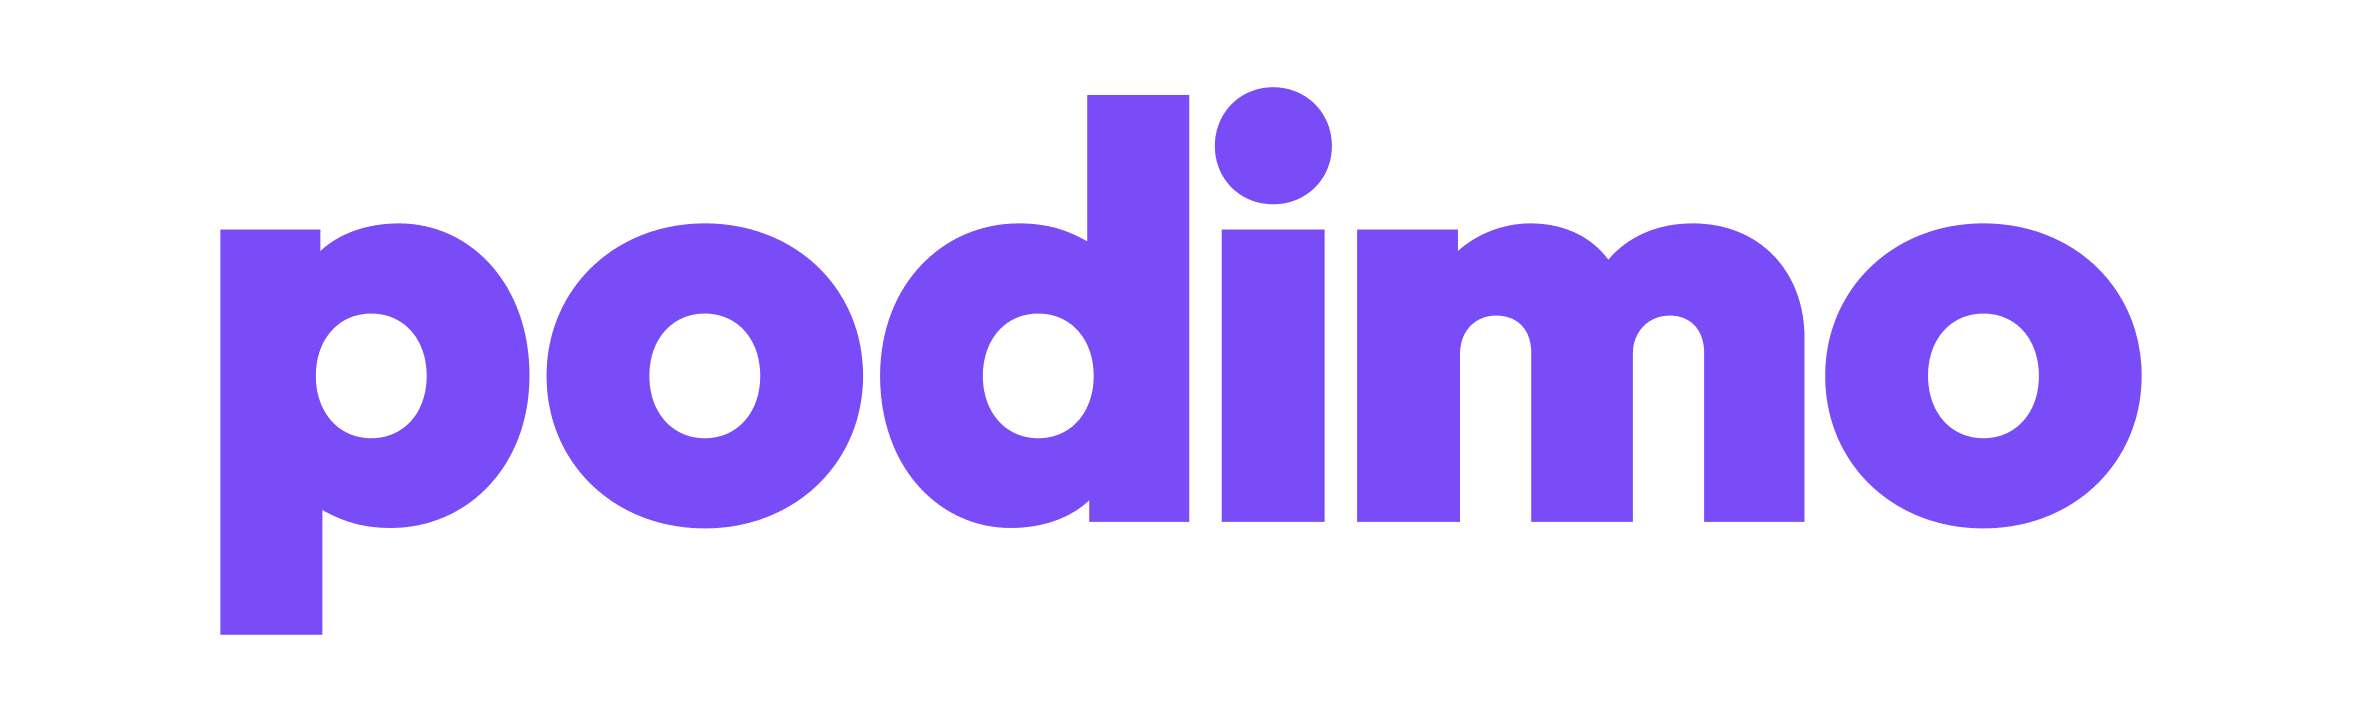 logo-new-violet